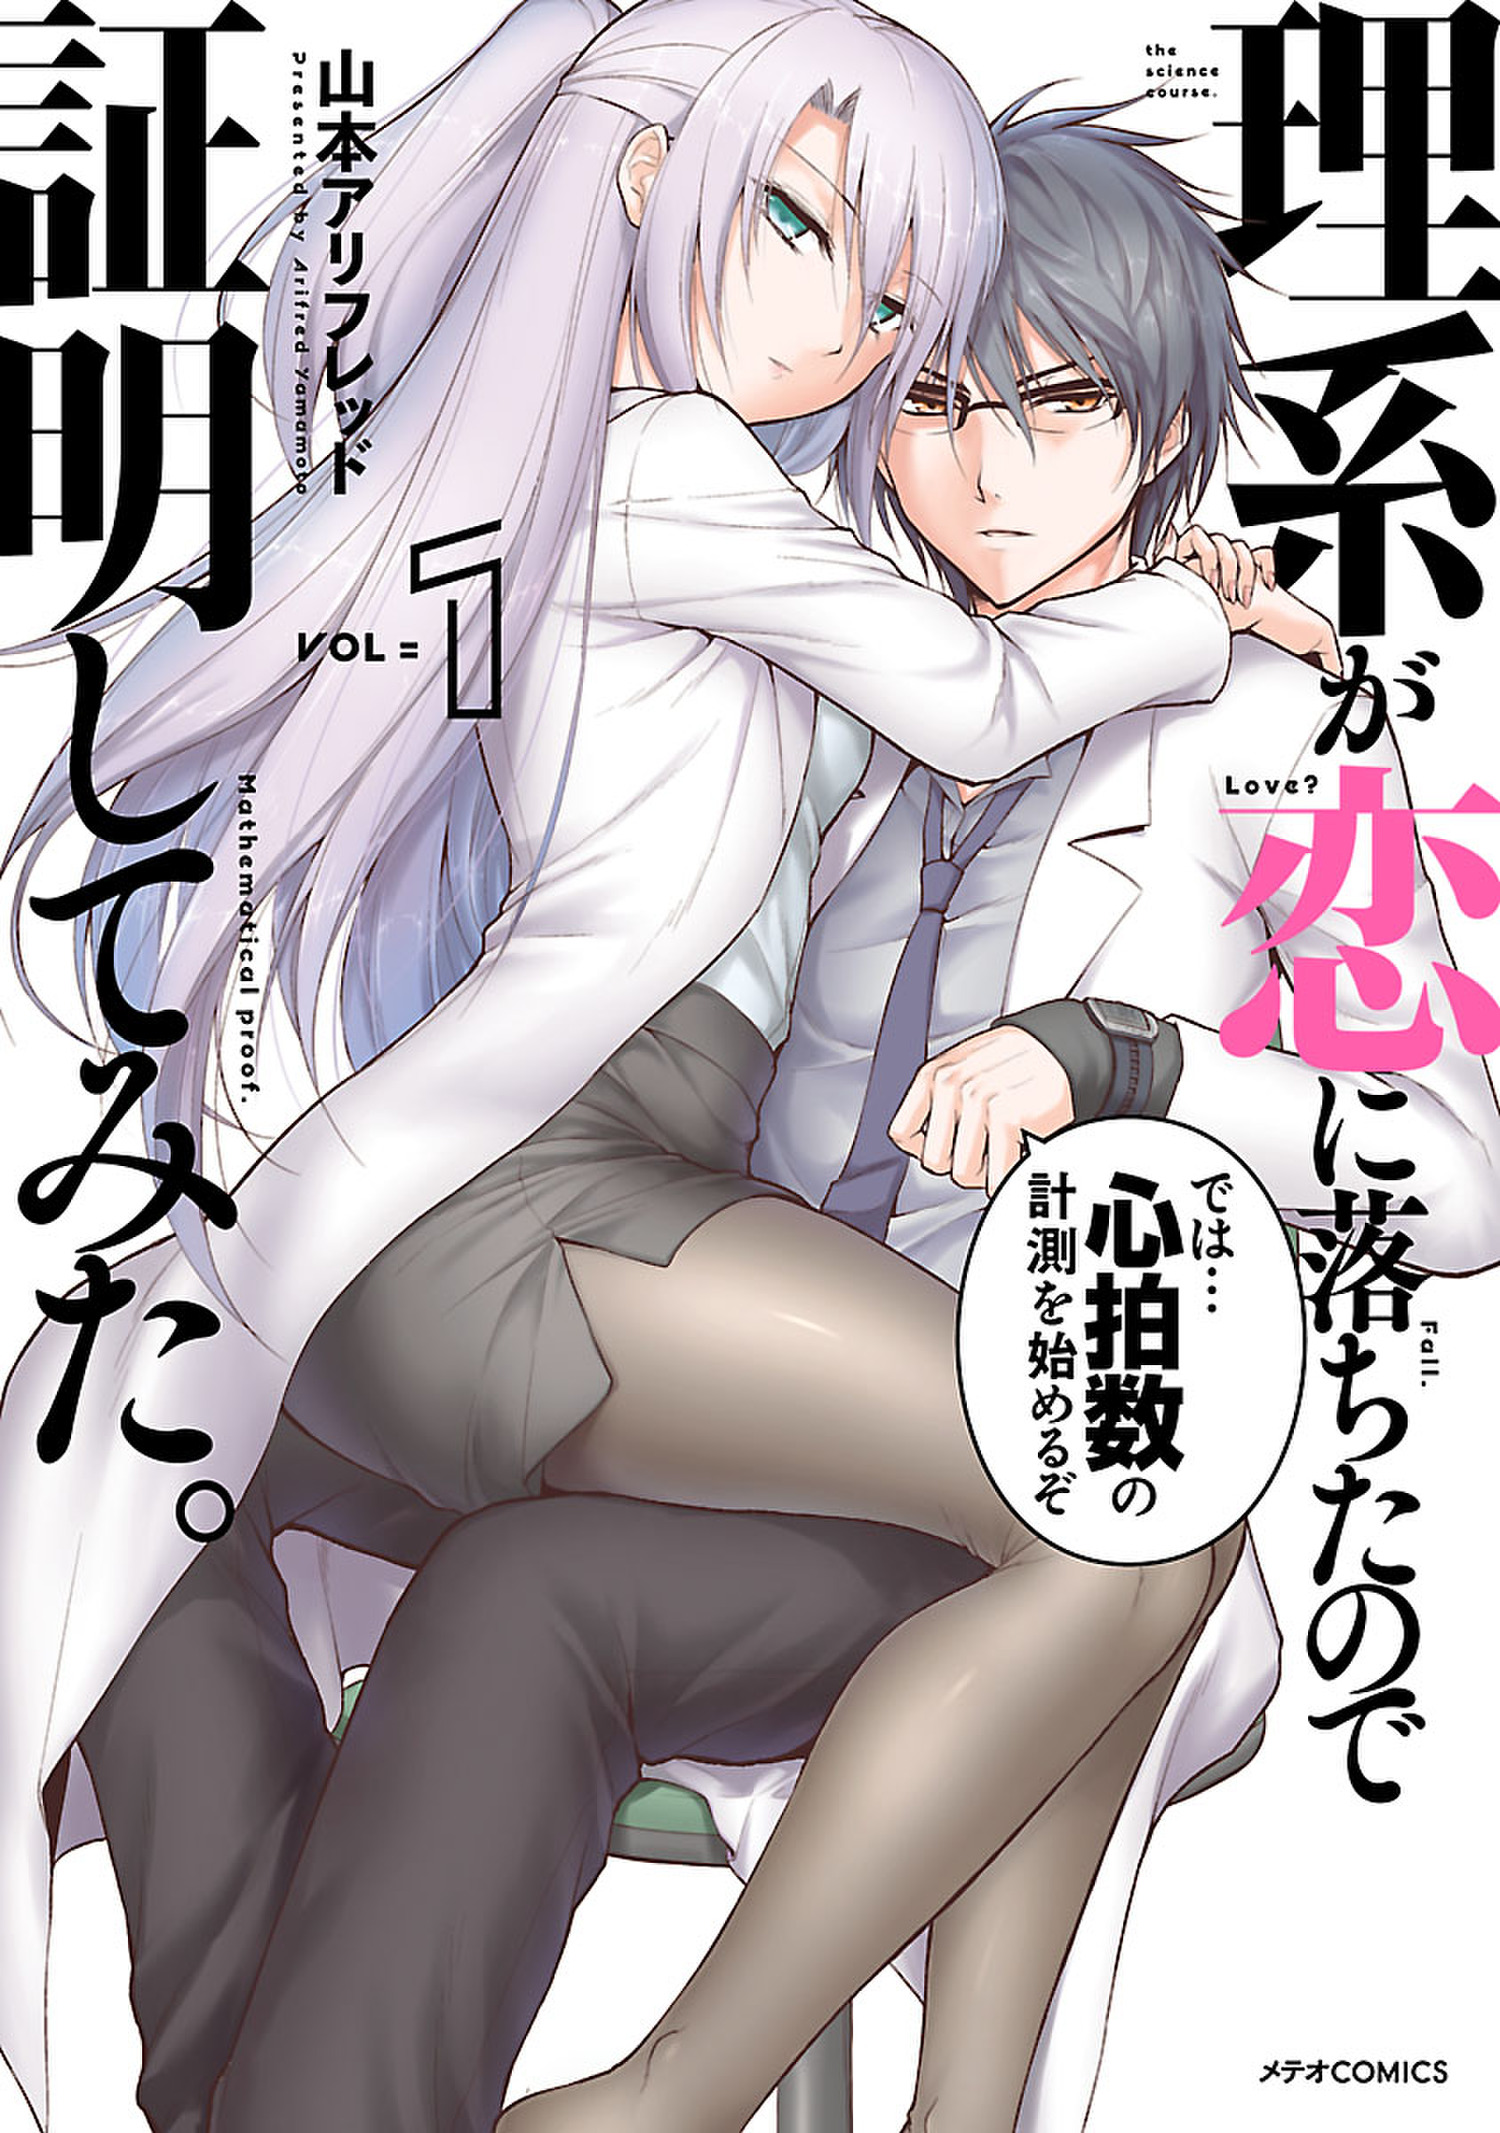 Rikei ga Koi ni Ochita no de Shoumei shitemita.  Anime Review: Two nerds,  one love. – Otaku Central